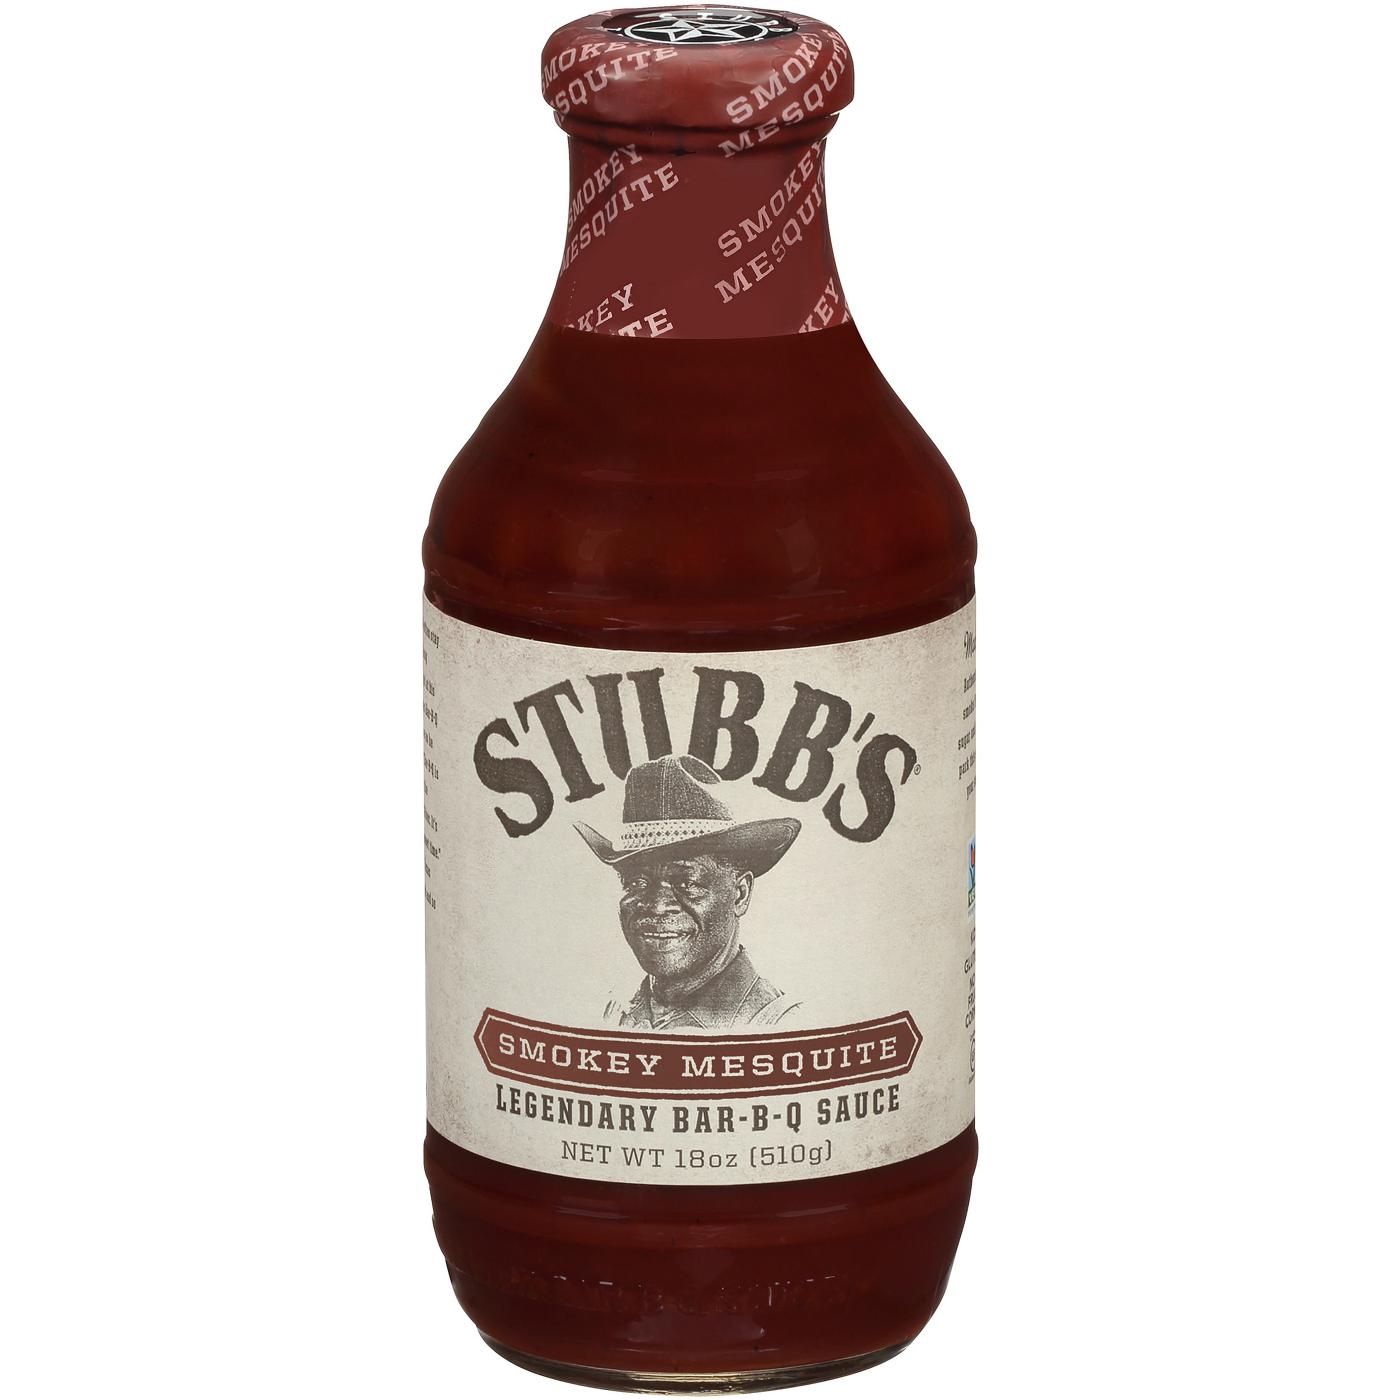 Stubb's Smokey Mesquite Bar-B-Q Sauce; image 1 of 8